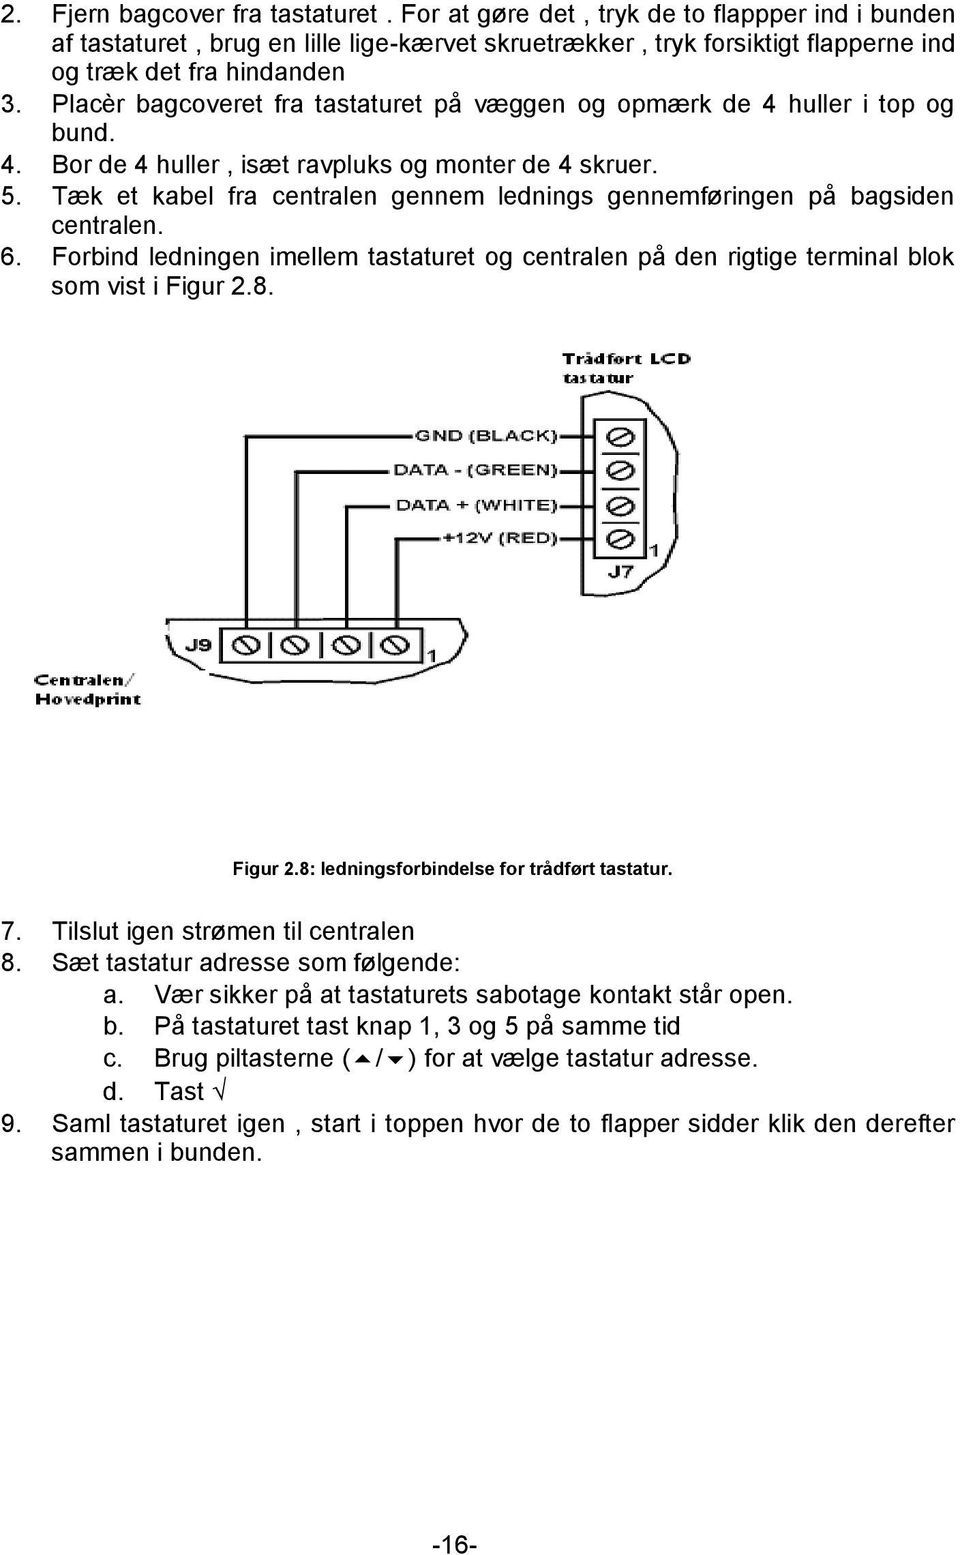 Tæk et kabel fra centralen gennem lednings gennemføringen på bagsiden centralen. 6. Forbind ledningen imellem tastaturet og centralen på den rigtige terminal blok som vist i Figur 2.